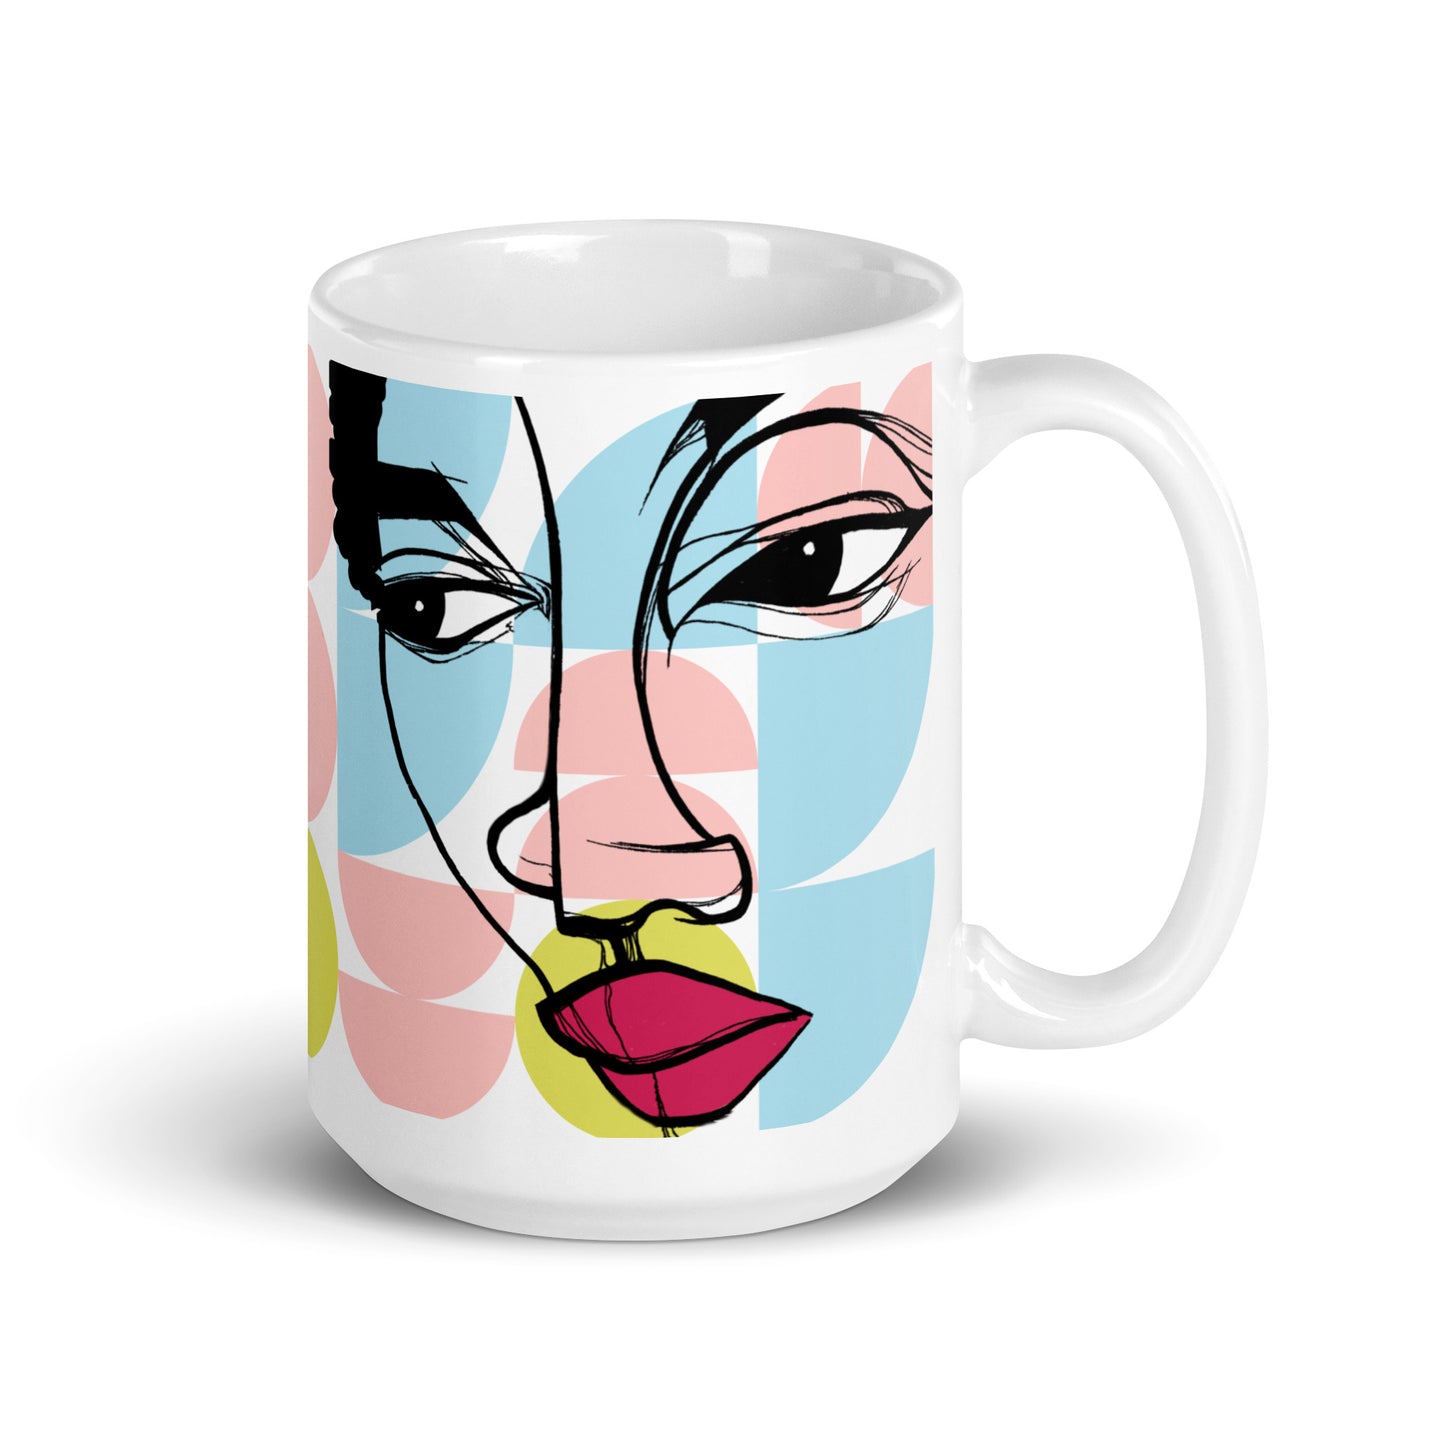 The Mood (Two) glossy mug